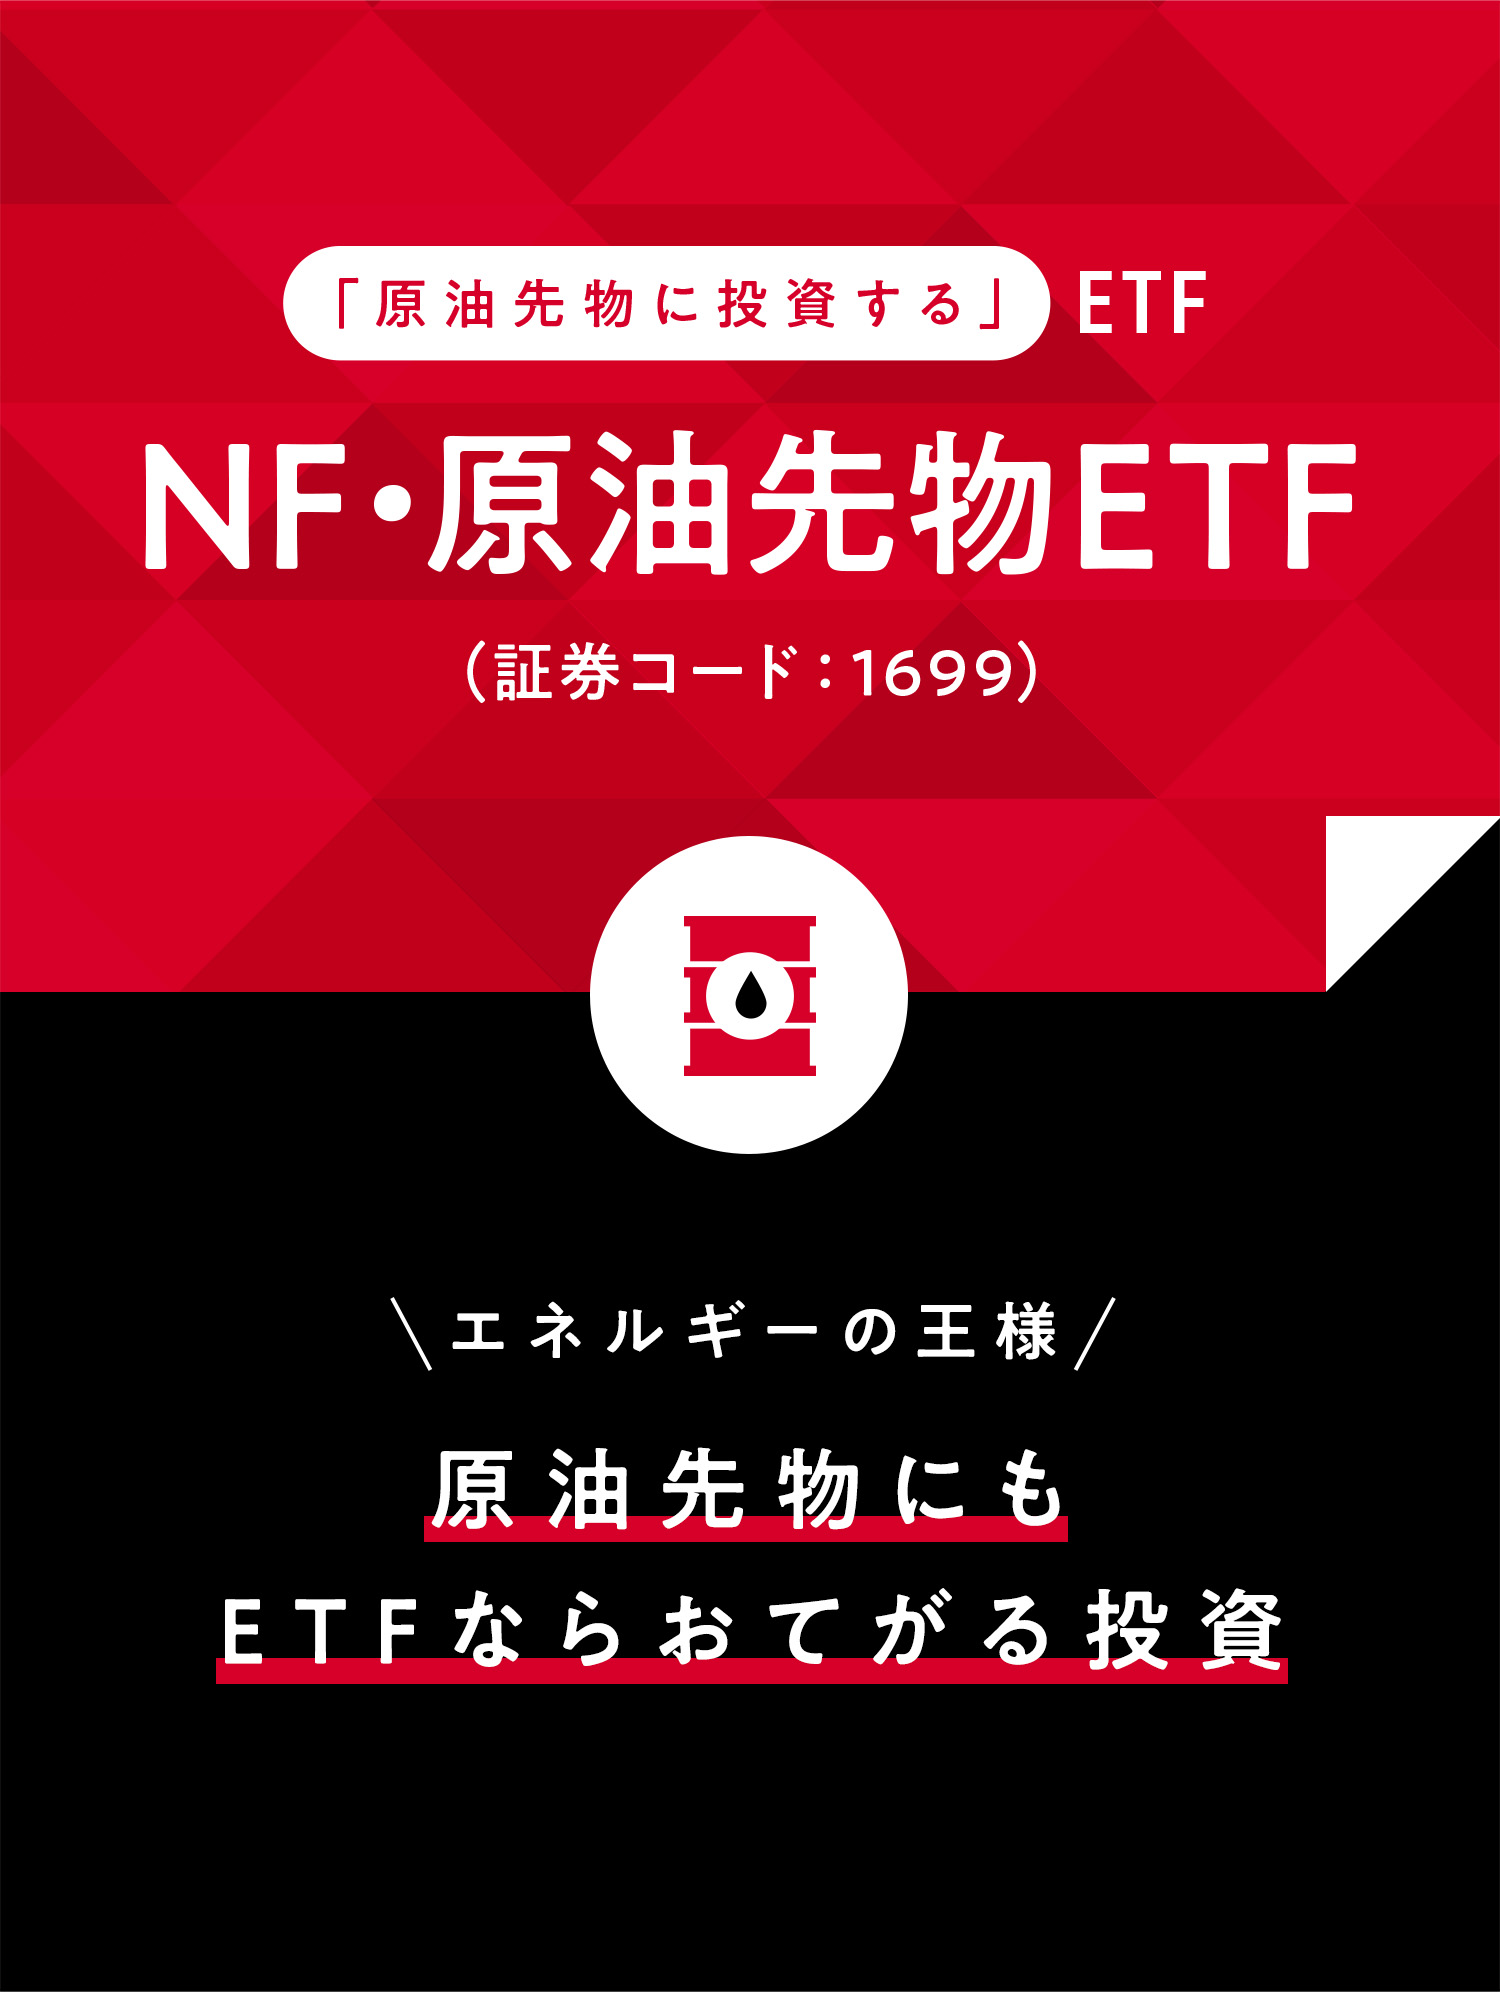 「原油先物に投資する」ETF NF・原油先物ETF(証券コード:1699) エネルギーの王様 原油先物にもETFならおてがる投資